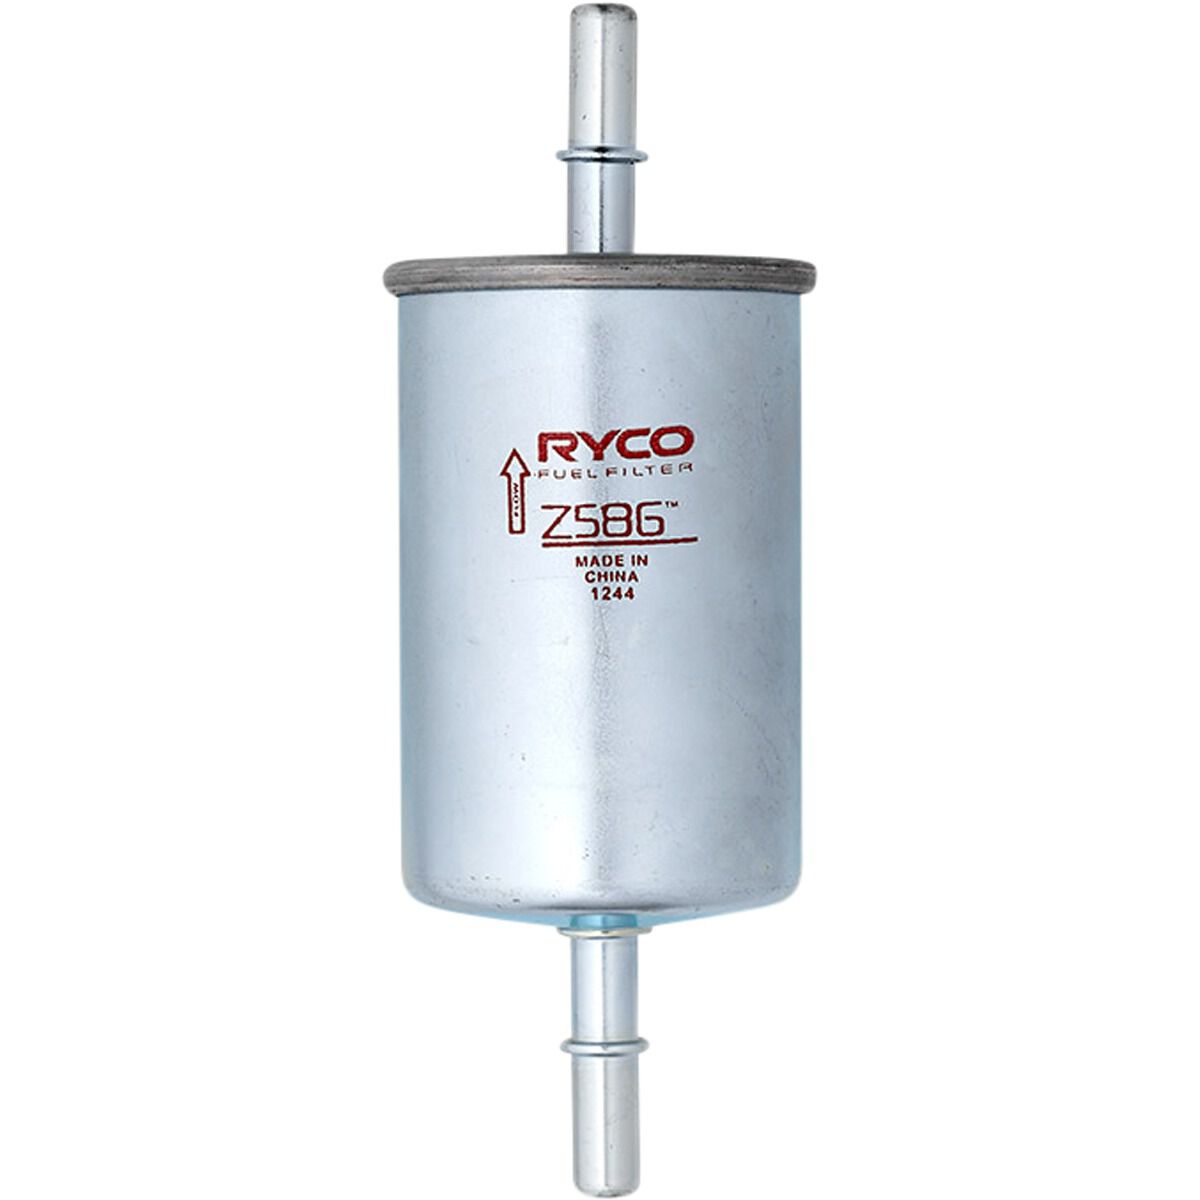 Ryco Fuel Filter - Z586, , scaau_hi-res